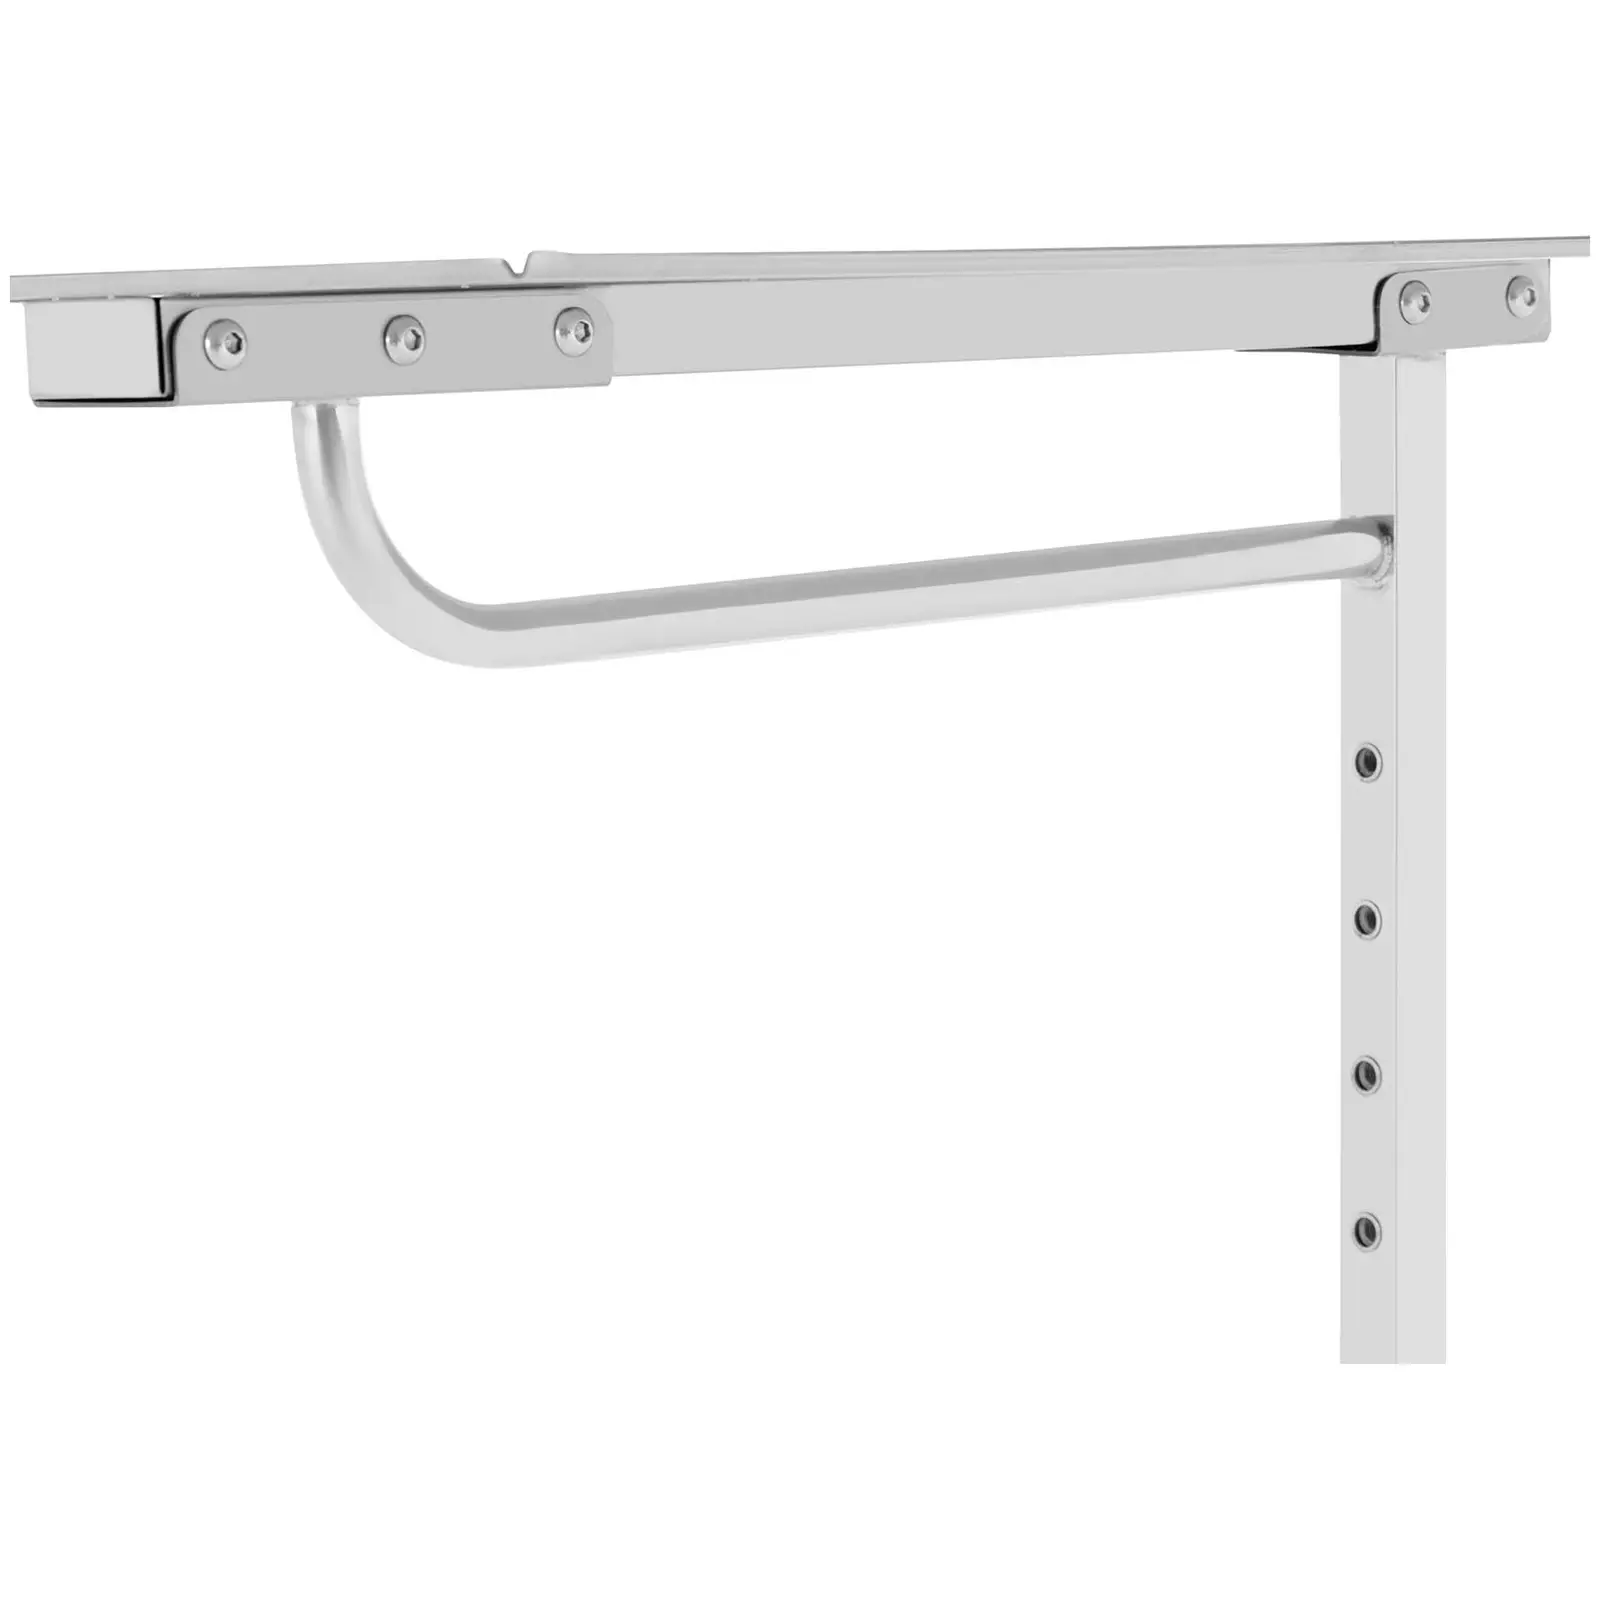 Műszerasztal - nyitott oldalú design - 60 x 40 cm - állítható magasságú - rozsdamentes acél / gumi